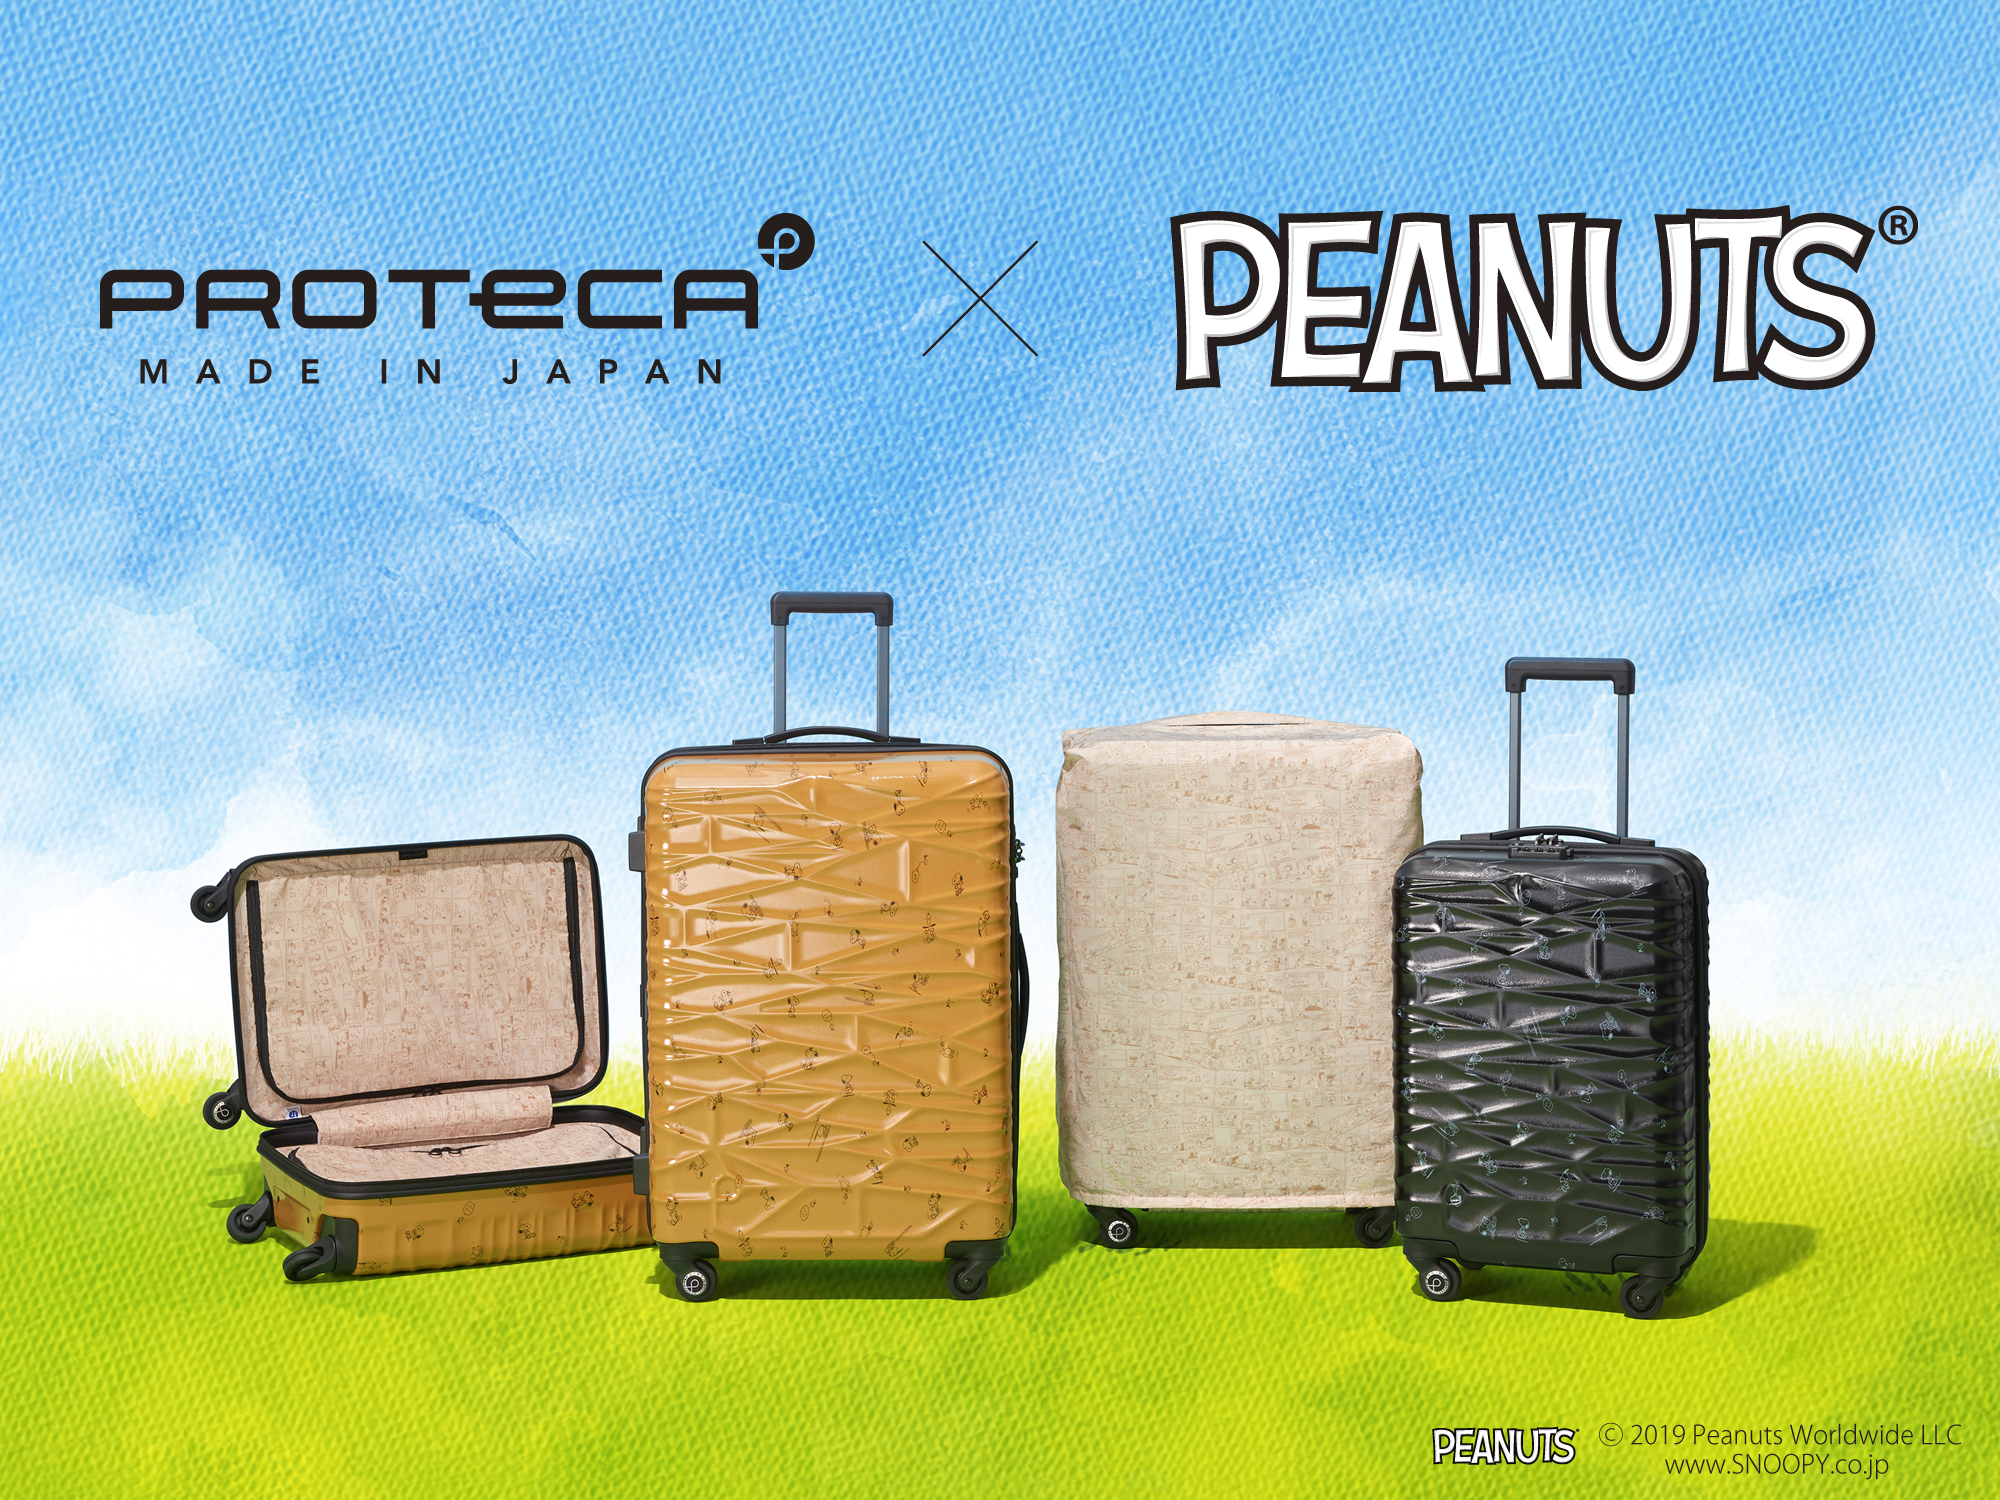 プロテカ Peanutsとのコラボスーツケース第二弾 10月1日発売 エース株式会社のプレスリリース